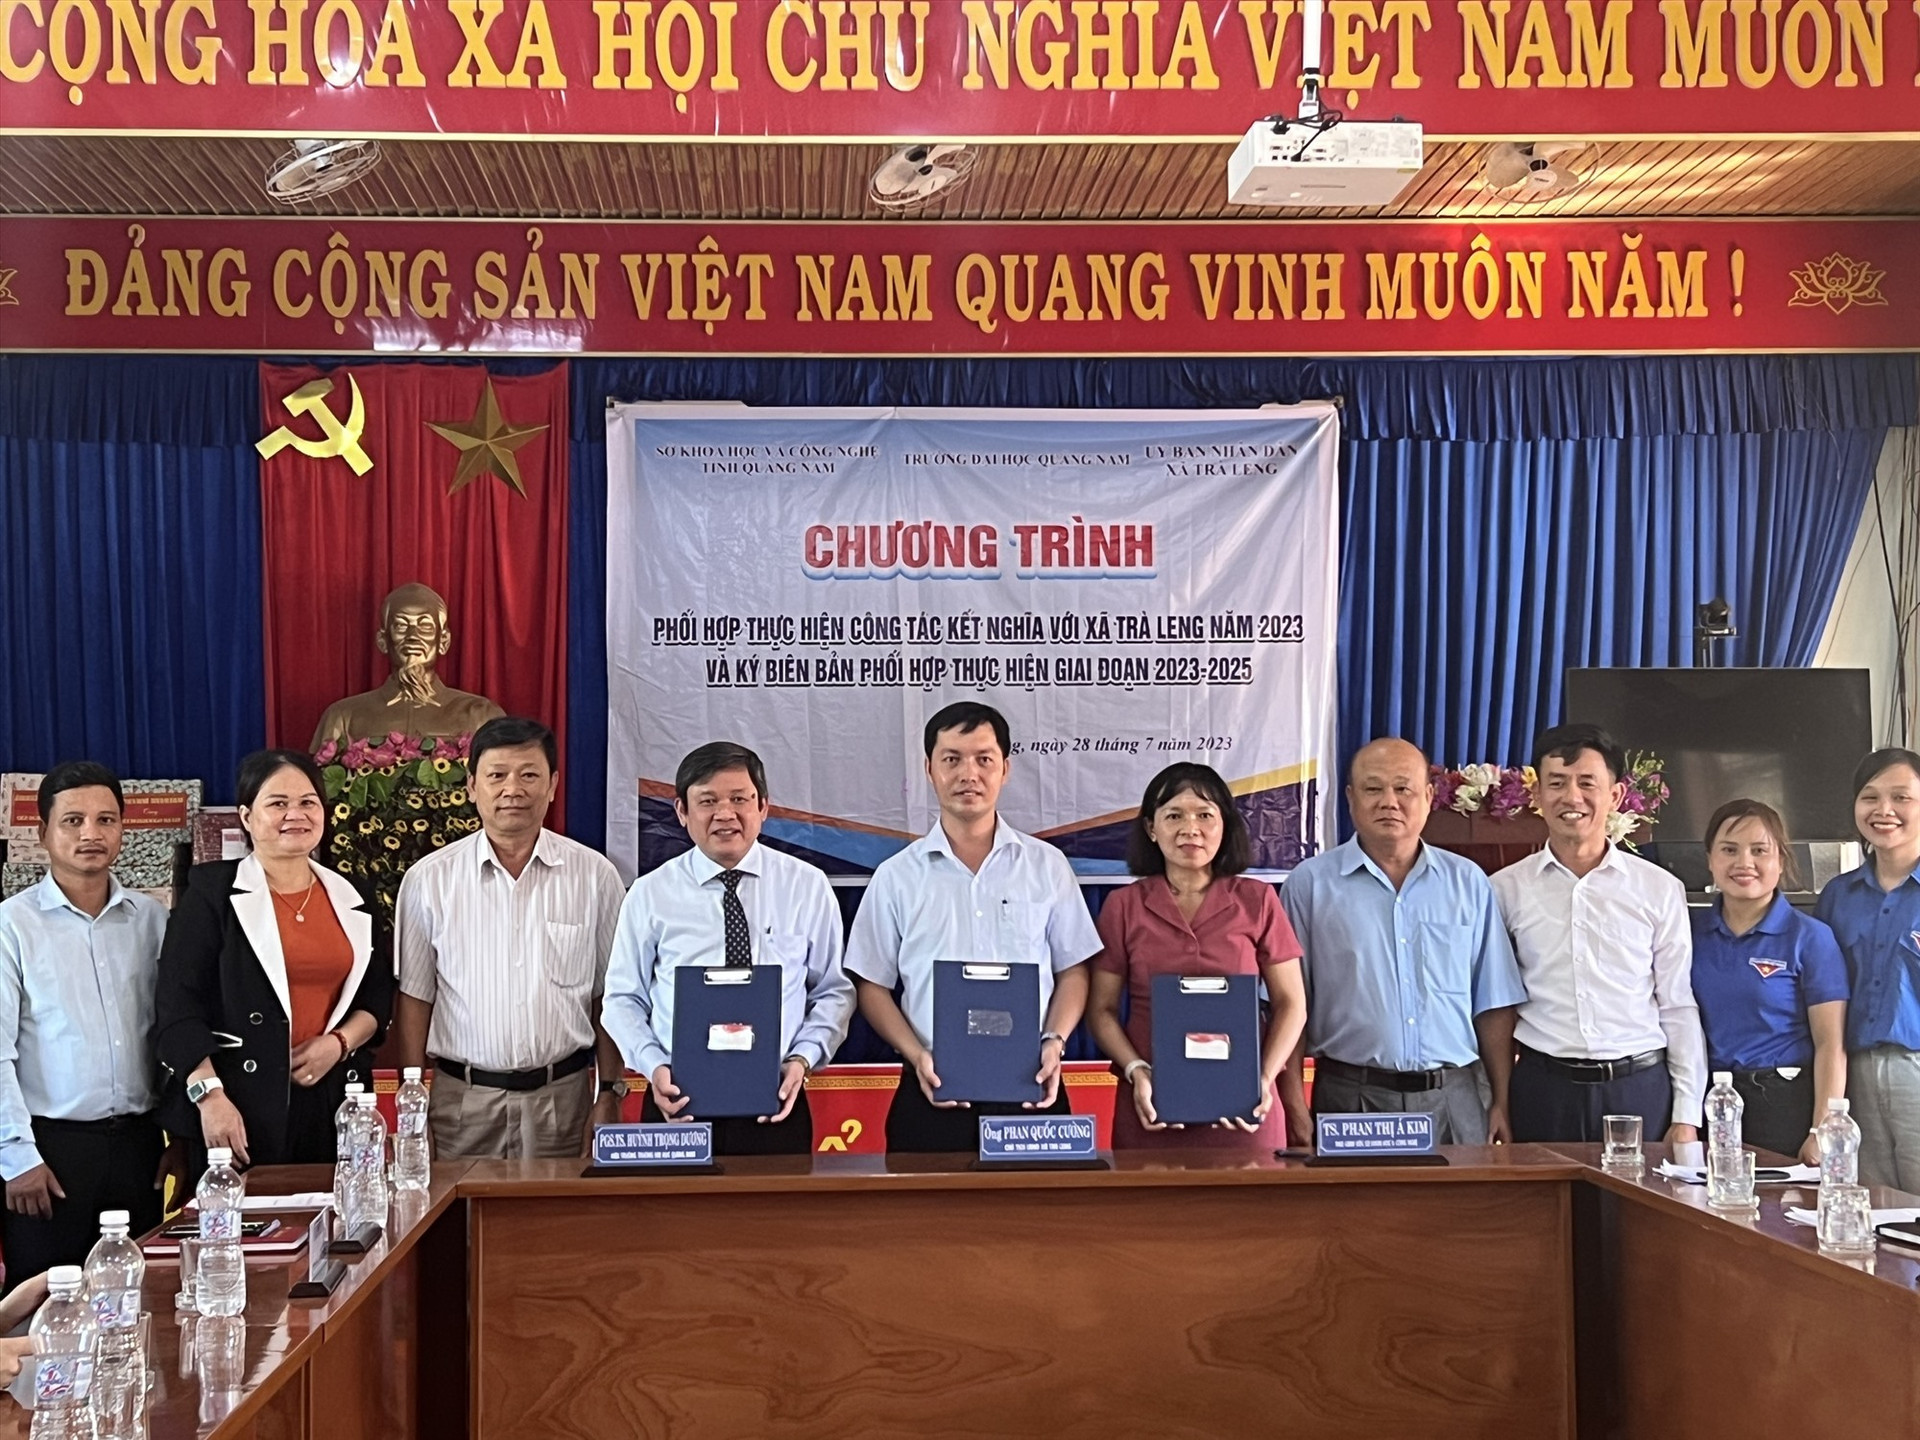 Sở KH&CN phối hợp với Trường Đại học Quảng Nam tổ chức các chương trình kết nghĩa, giúp đỡ xã Trà Leng